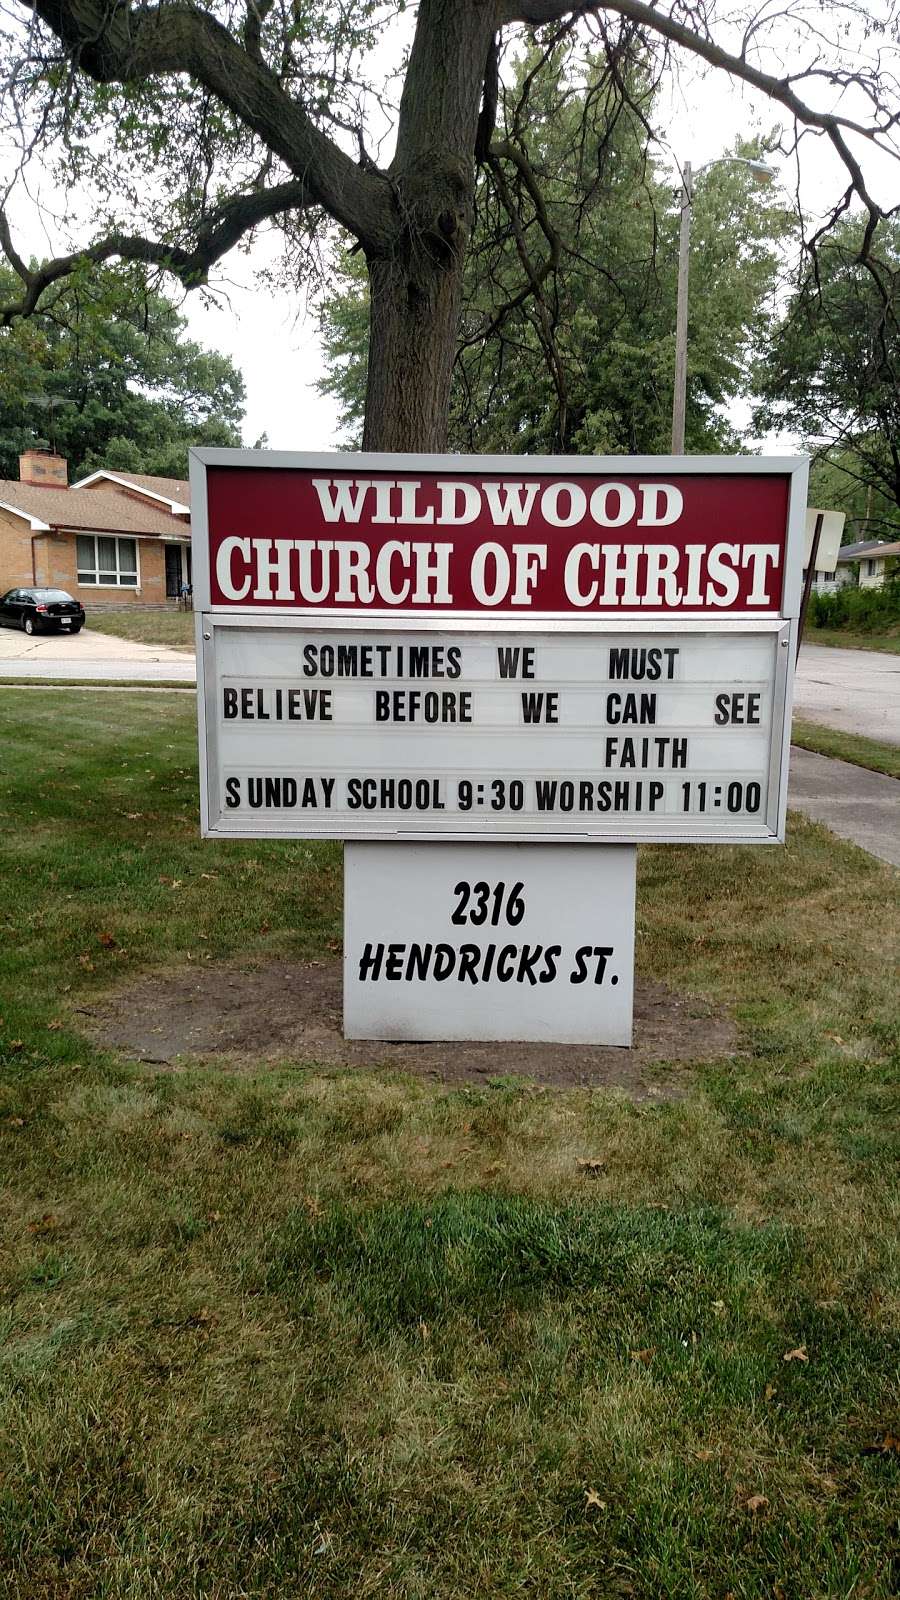 Wildwood Church of Christ | 2316 Hendricks St, Gary, IN 46404 | Phone: (219) 977-1135